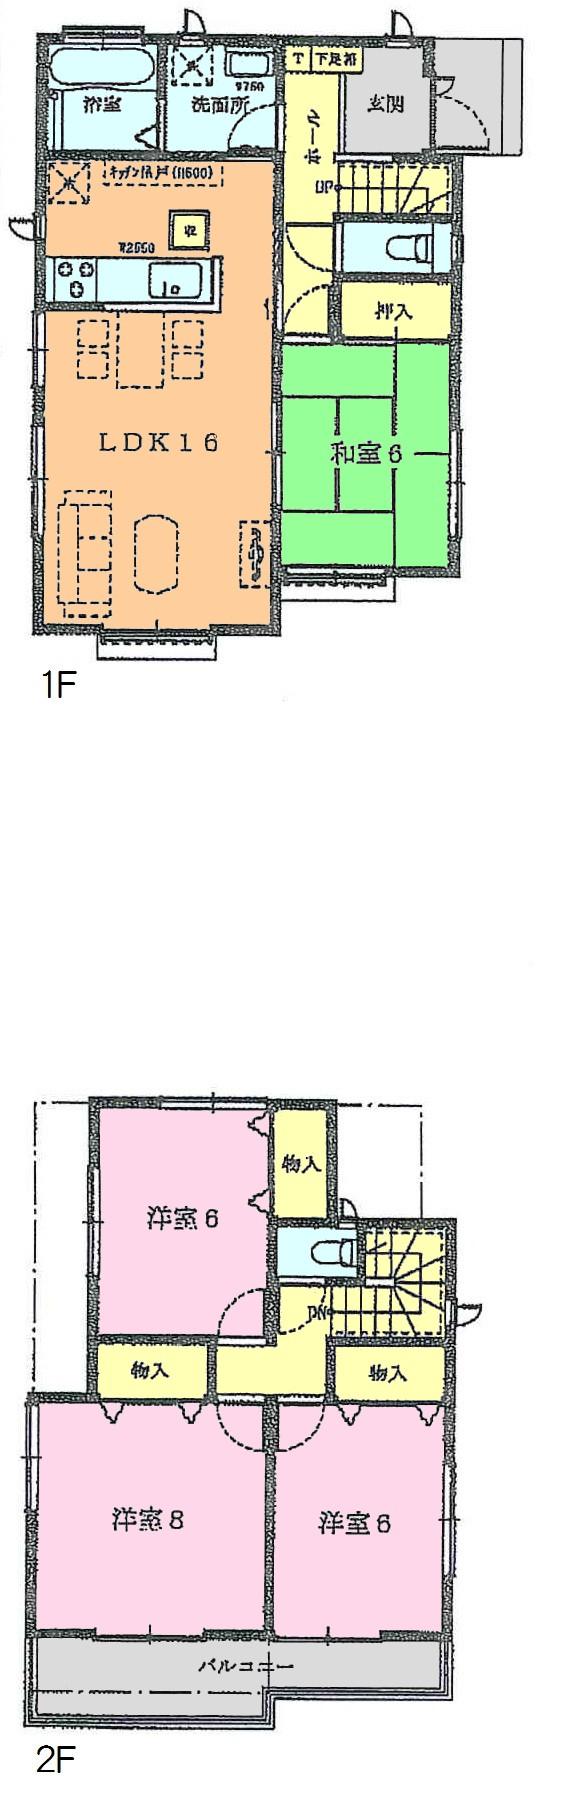 Other. Floor Plan (F Building)